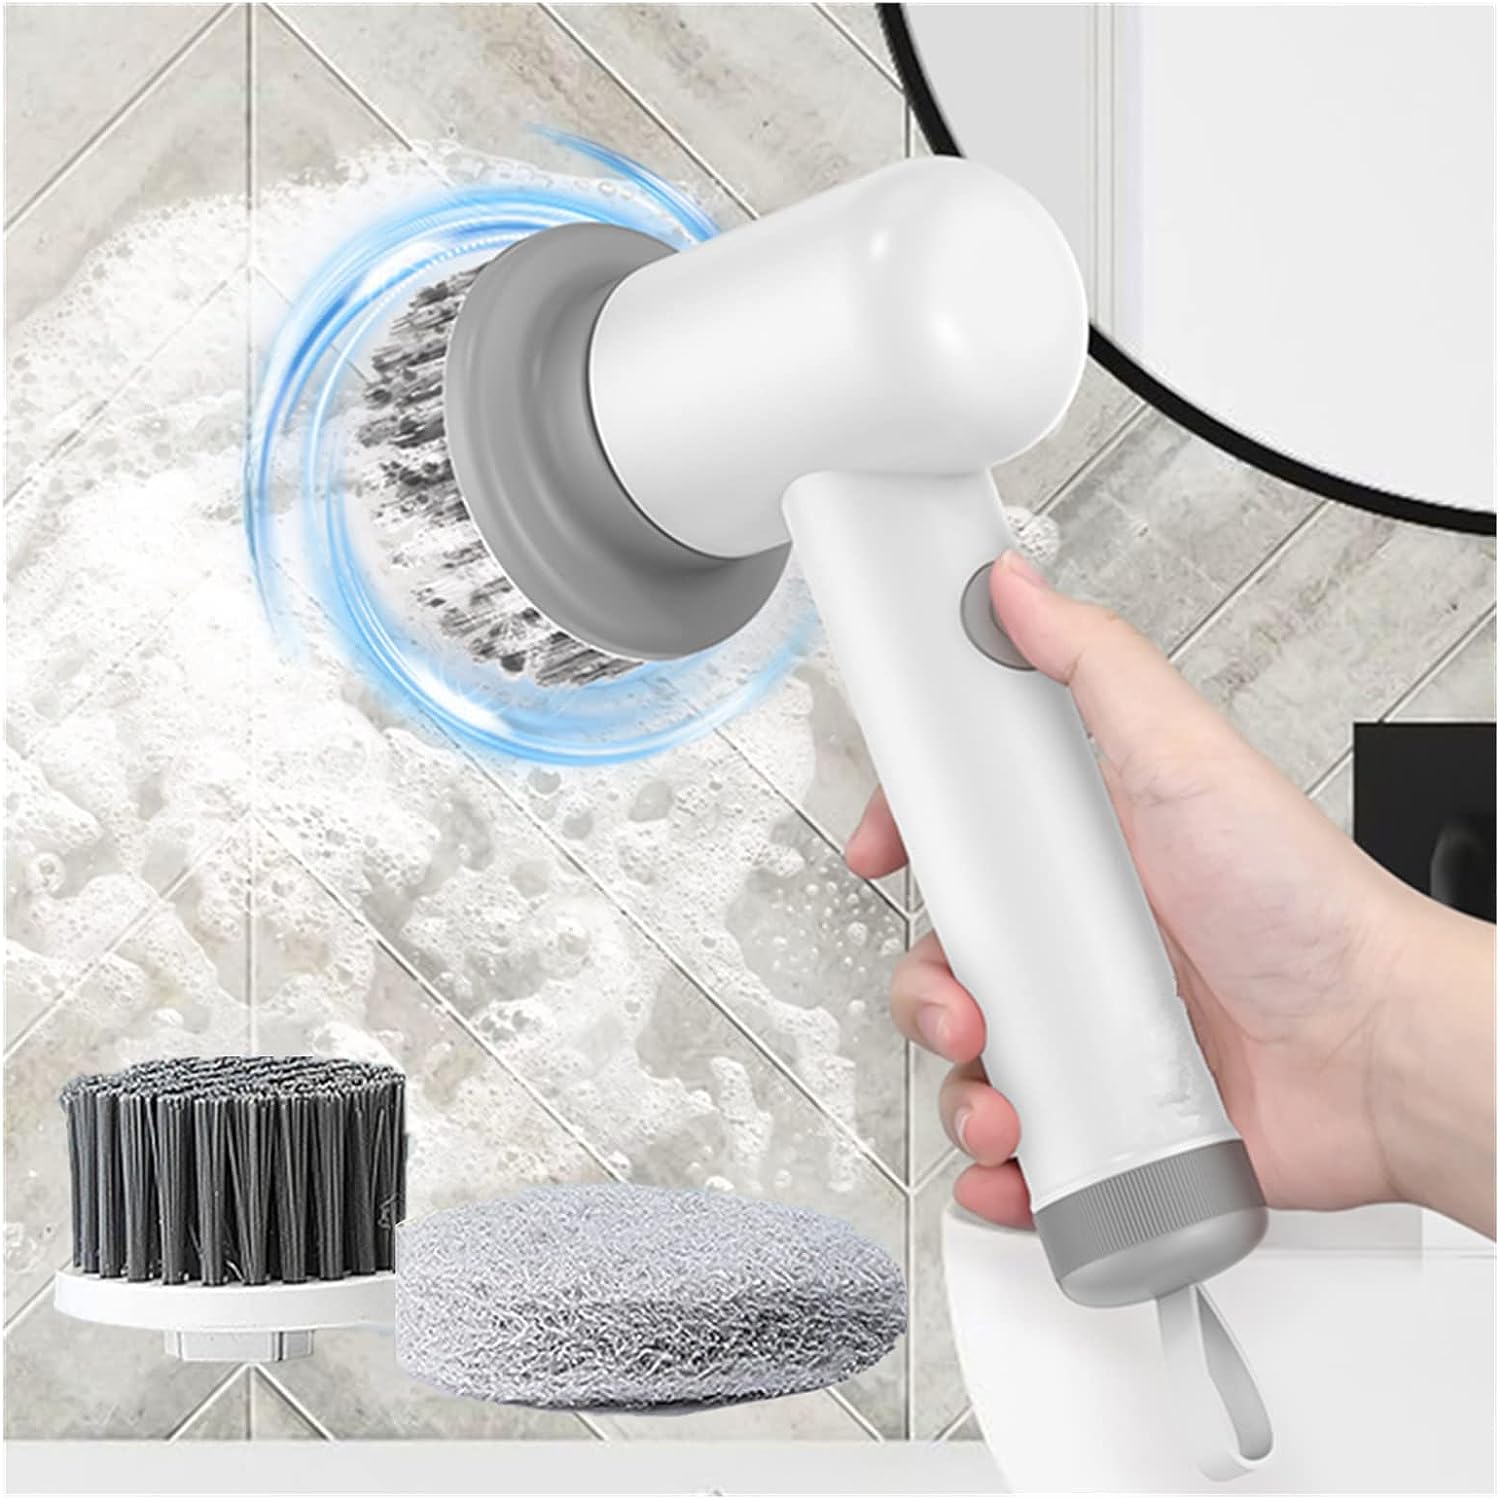 "Kracht door vuil: Ontketen de reinigingsmagie van de elektrische schrobzuigmachine - uw snoerloze schoonmaakkampioen!"